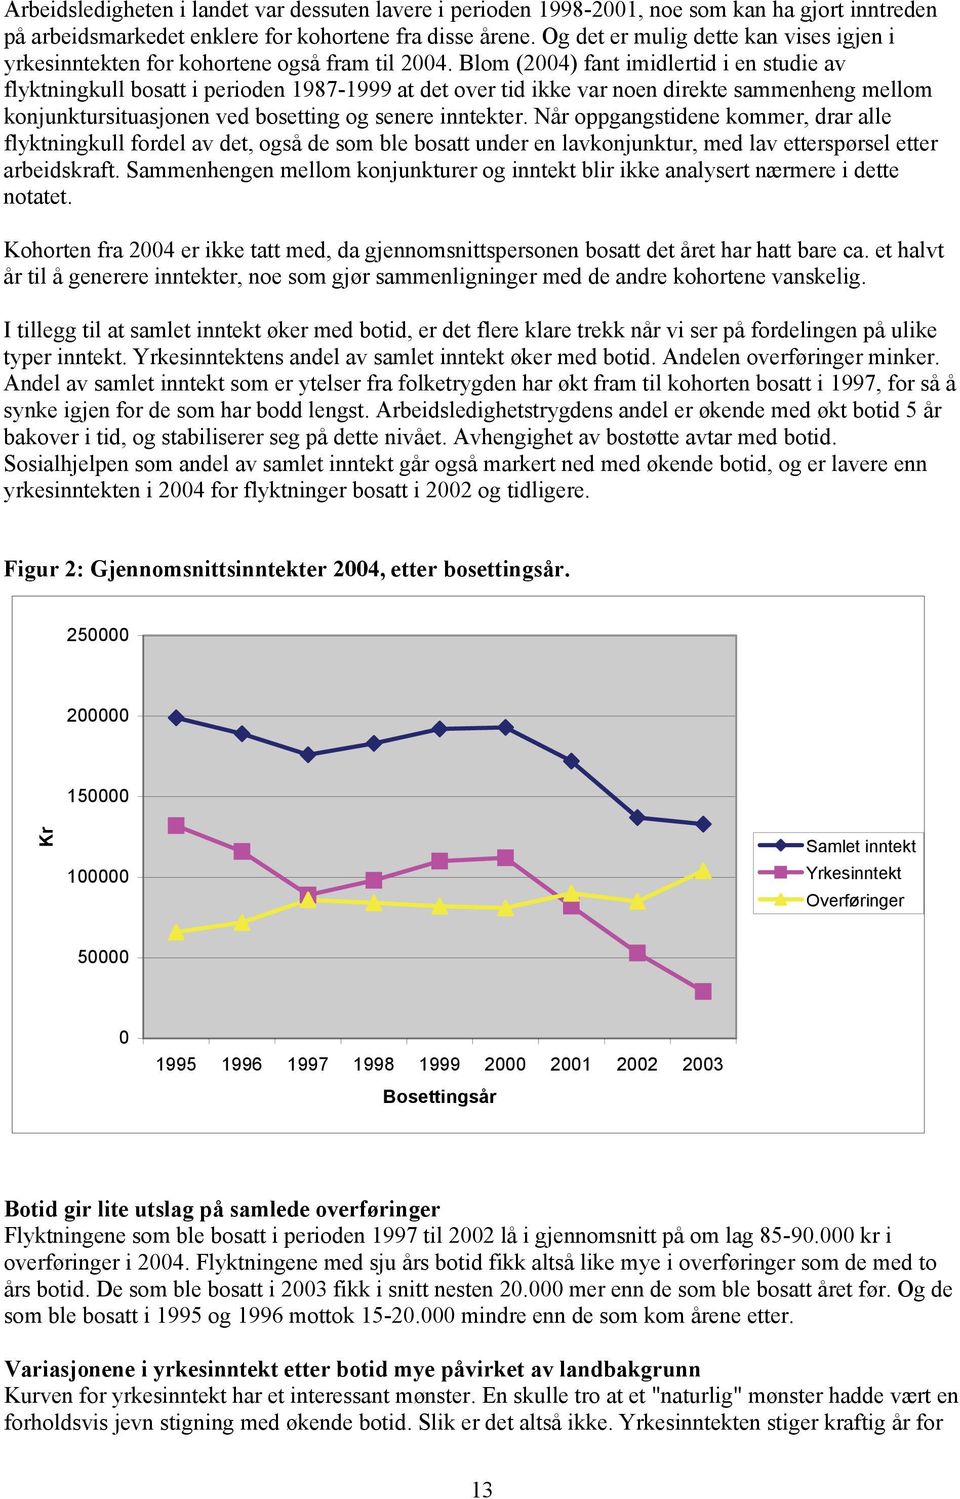 Blom (2004) fant imidlertid i en studie av flyktningkull bosatt i perioden 1987-1999 at det over tid ikke var noen direkte sammenheng mellom konjunktursituasjonen ved bosetting og senere inntekter.